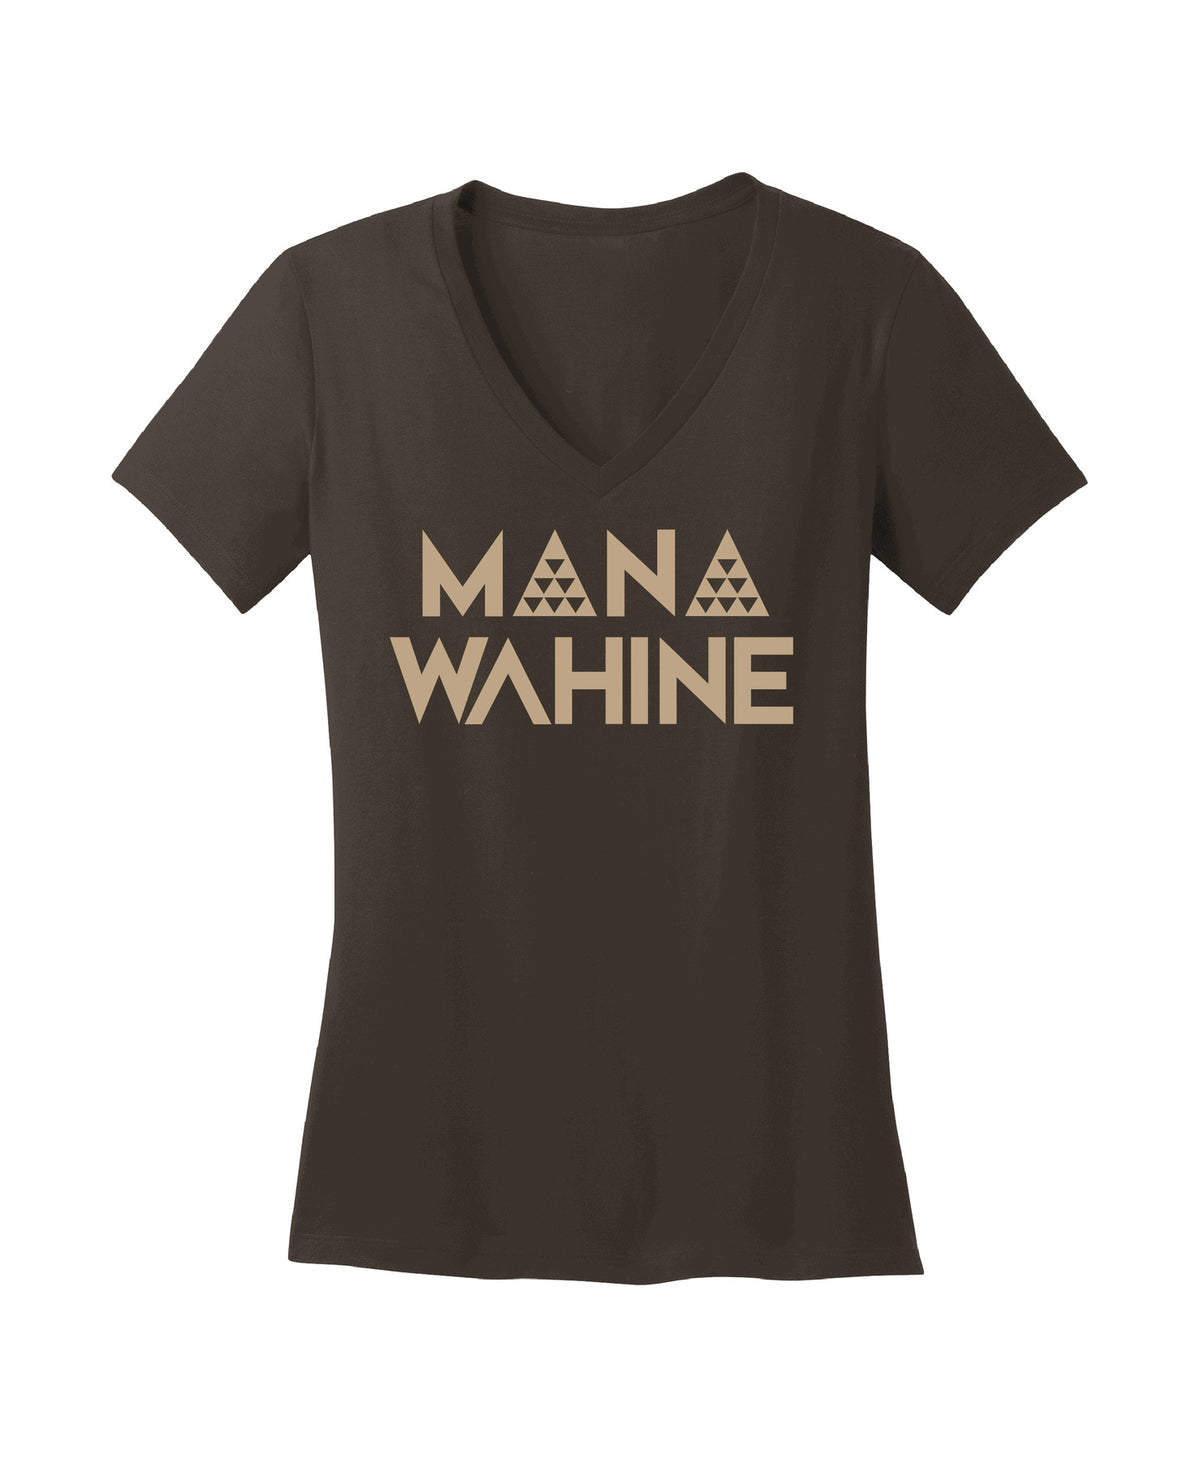 Pop-Up Mākeke - Hae Hawaii-WP - Mana Wahine V-Neck T-Shirt - Espresso